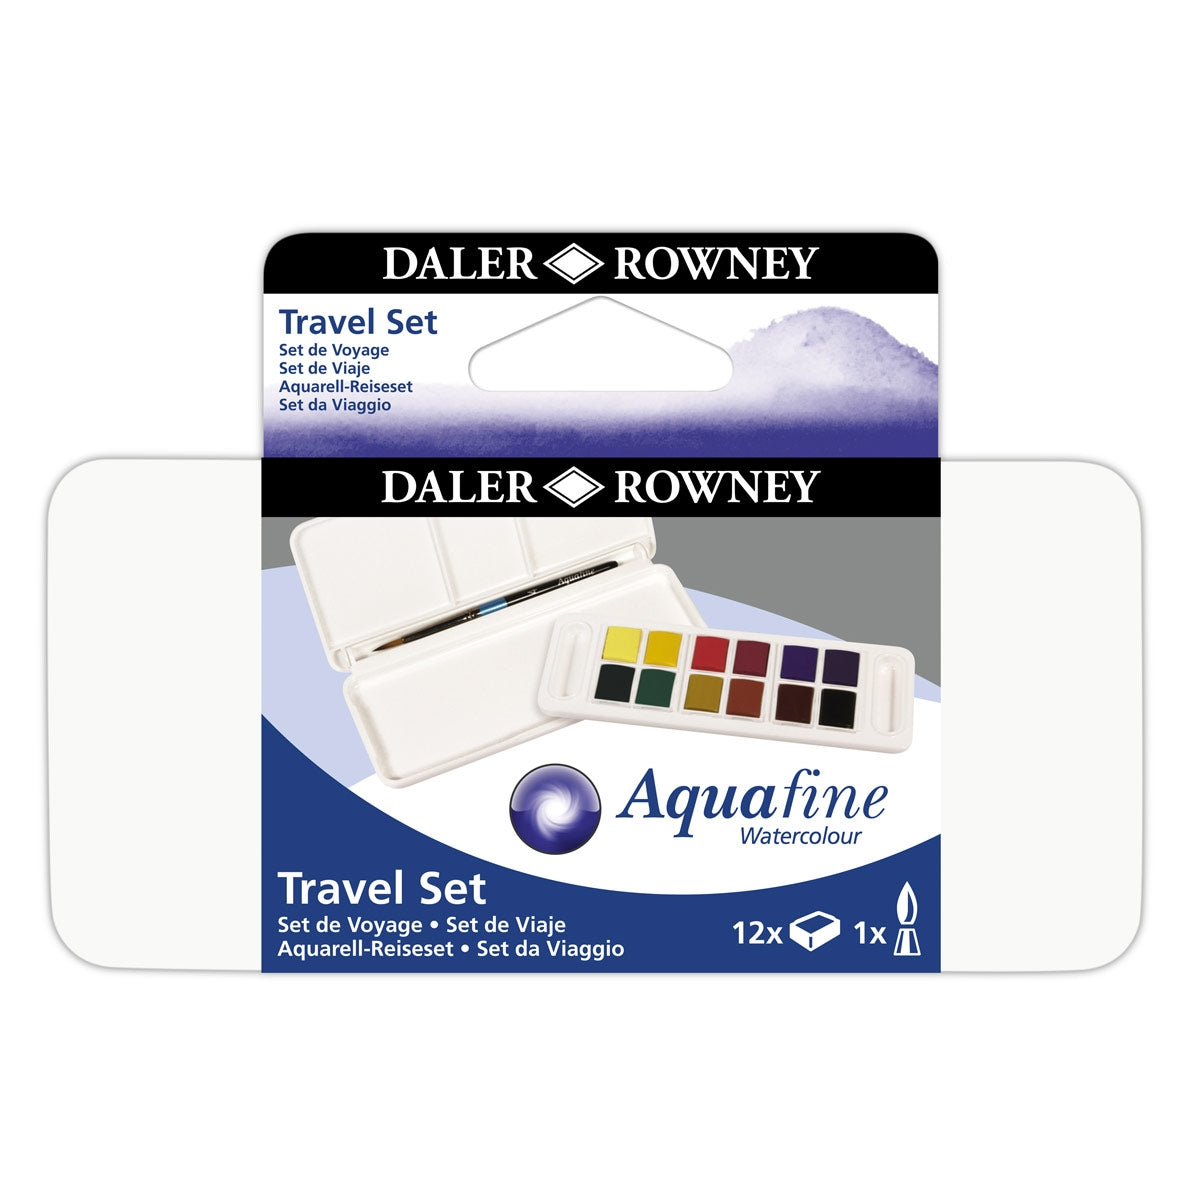 Daler Rowney Aquafine 12 Watercolour Half Pans Paint Travel Set